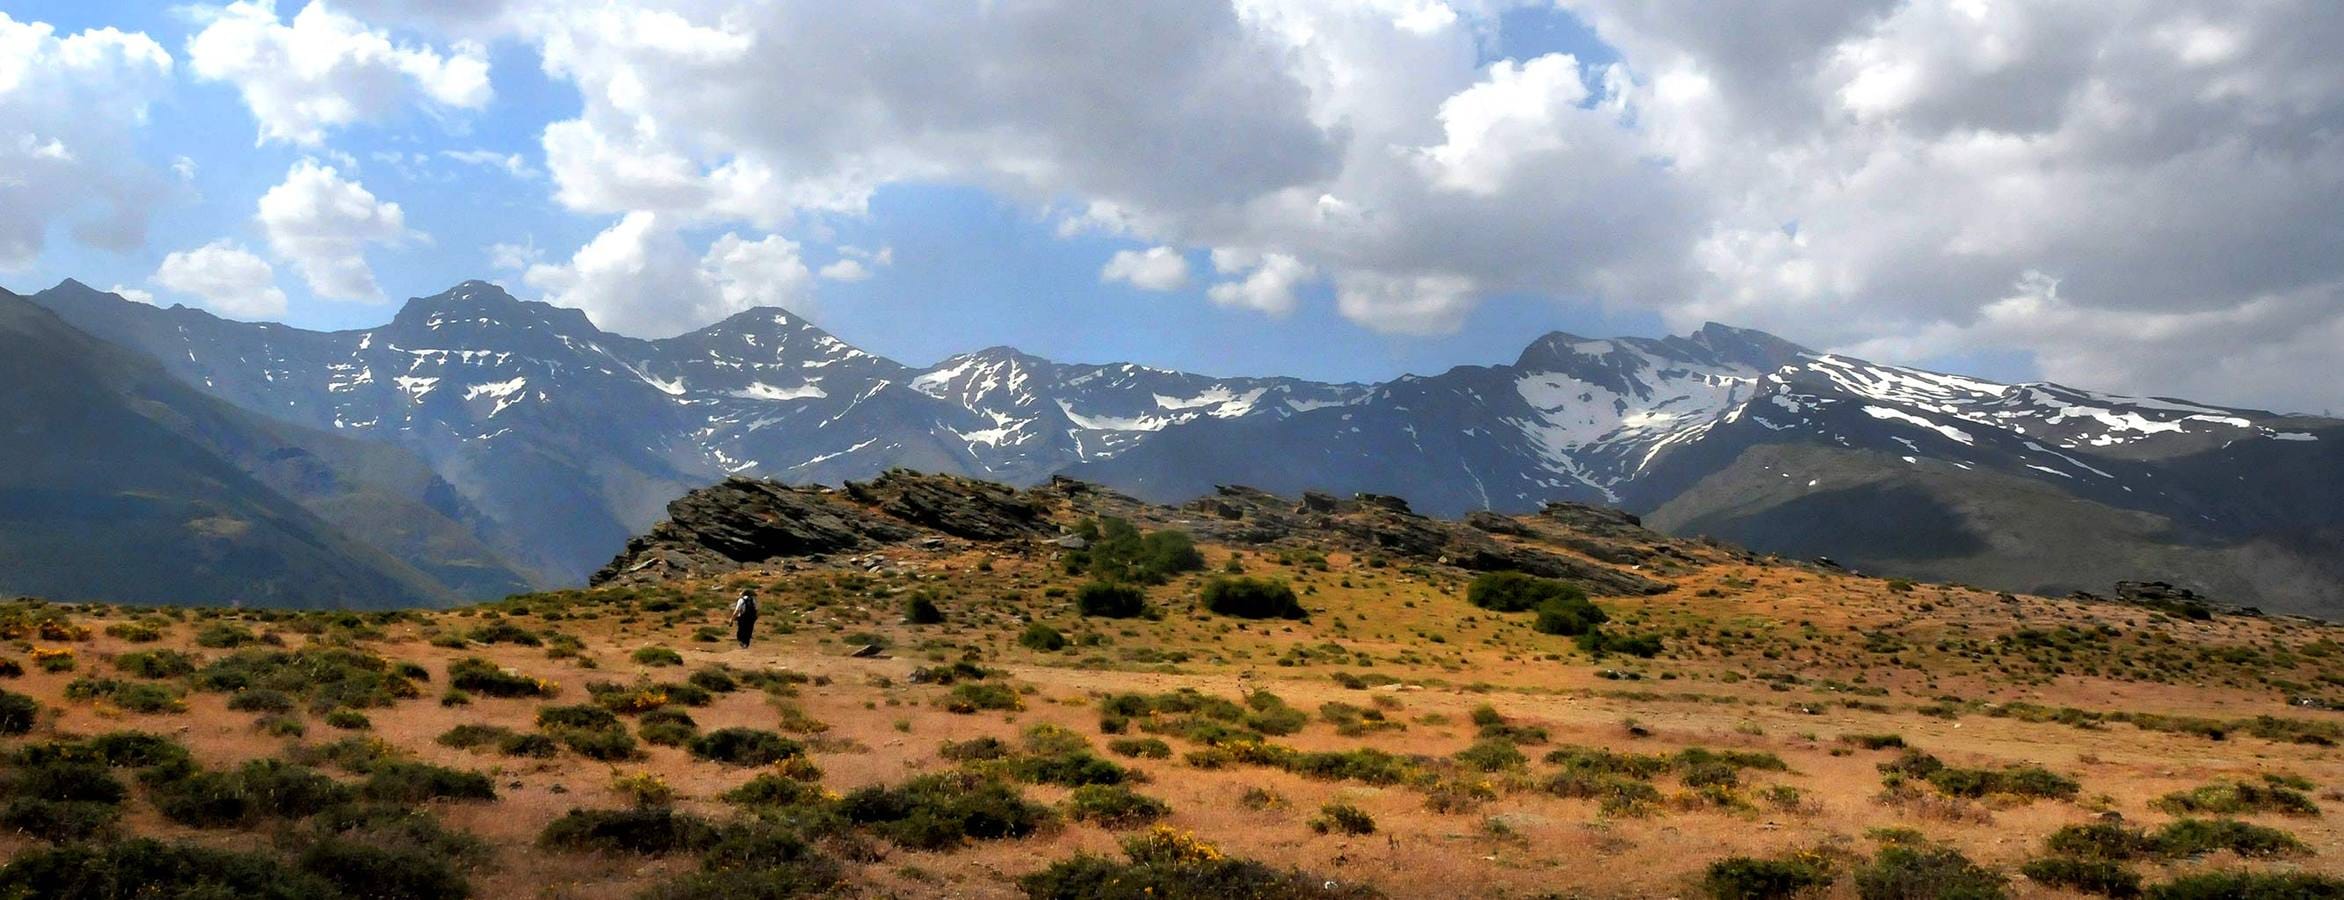 La 'cuerda' de los 'tresmiles' de Sierra Nevada, vista desde la loma de Papeles, en Güéjar Sierra.